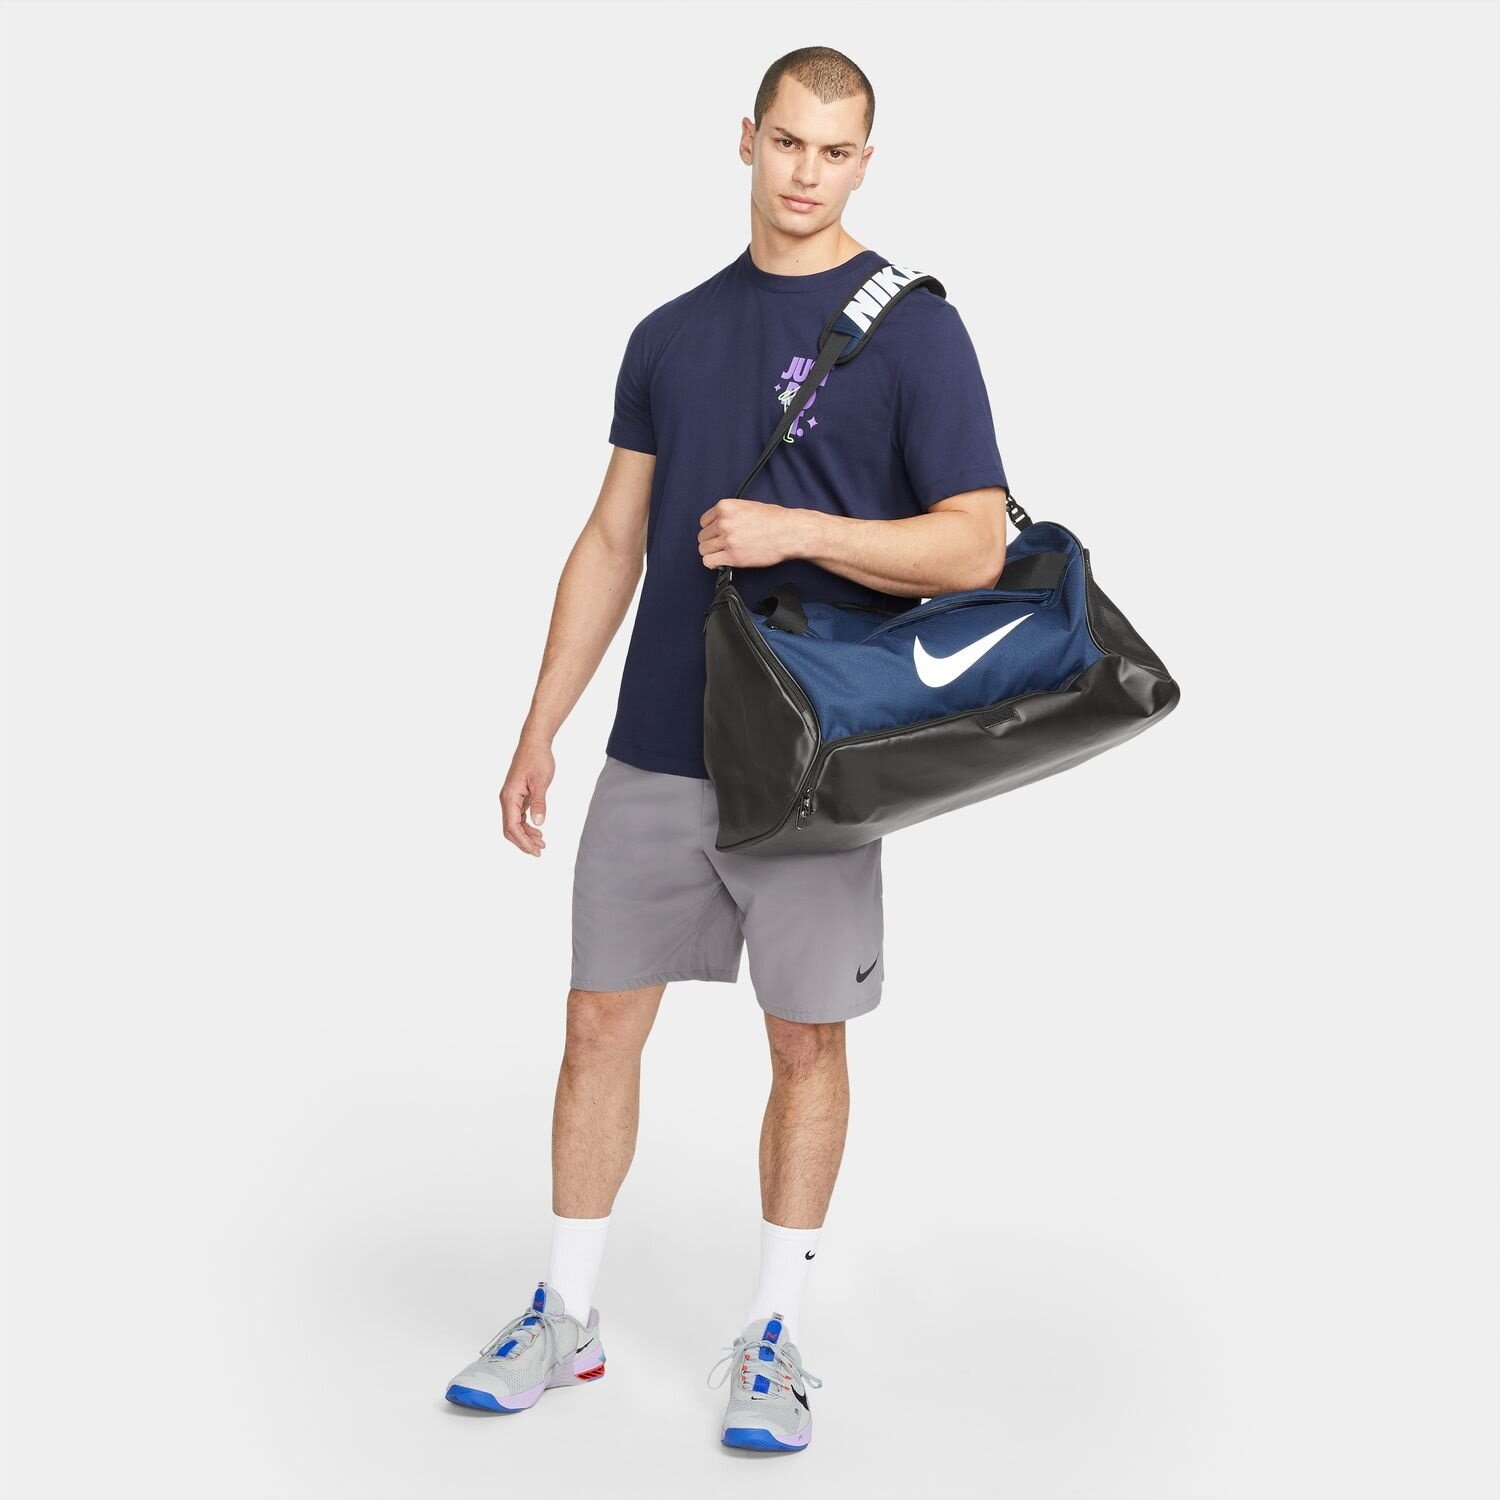  Unisex Nike Brasilia 6 (Medium) Training Duffel Bag : Clothing,  Shoes & Jewelry